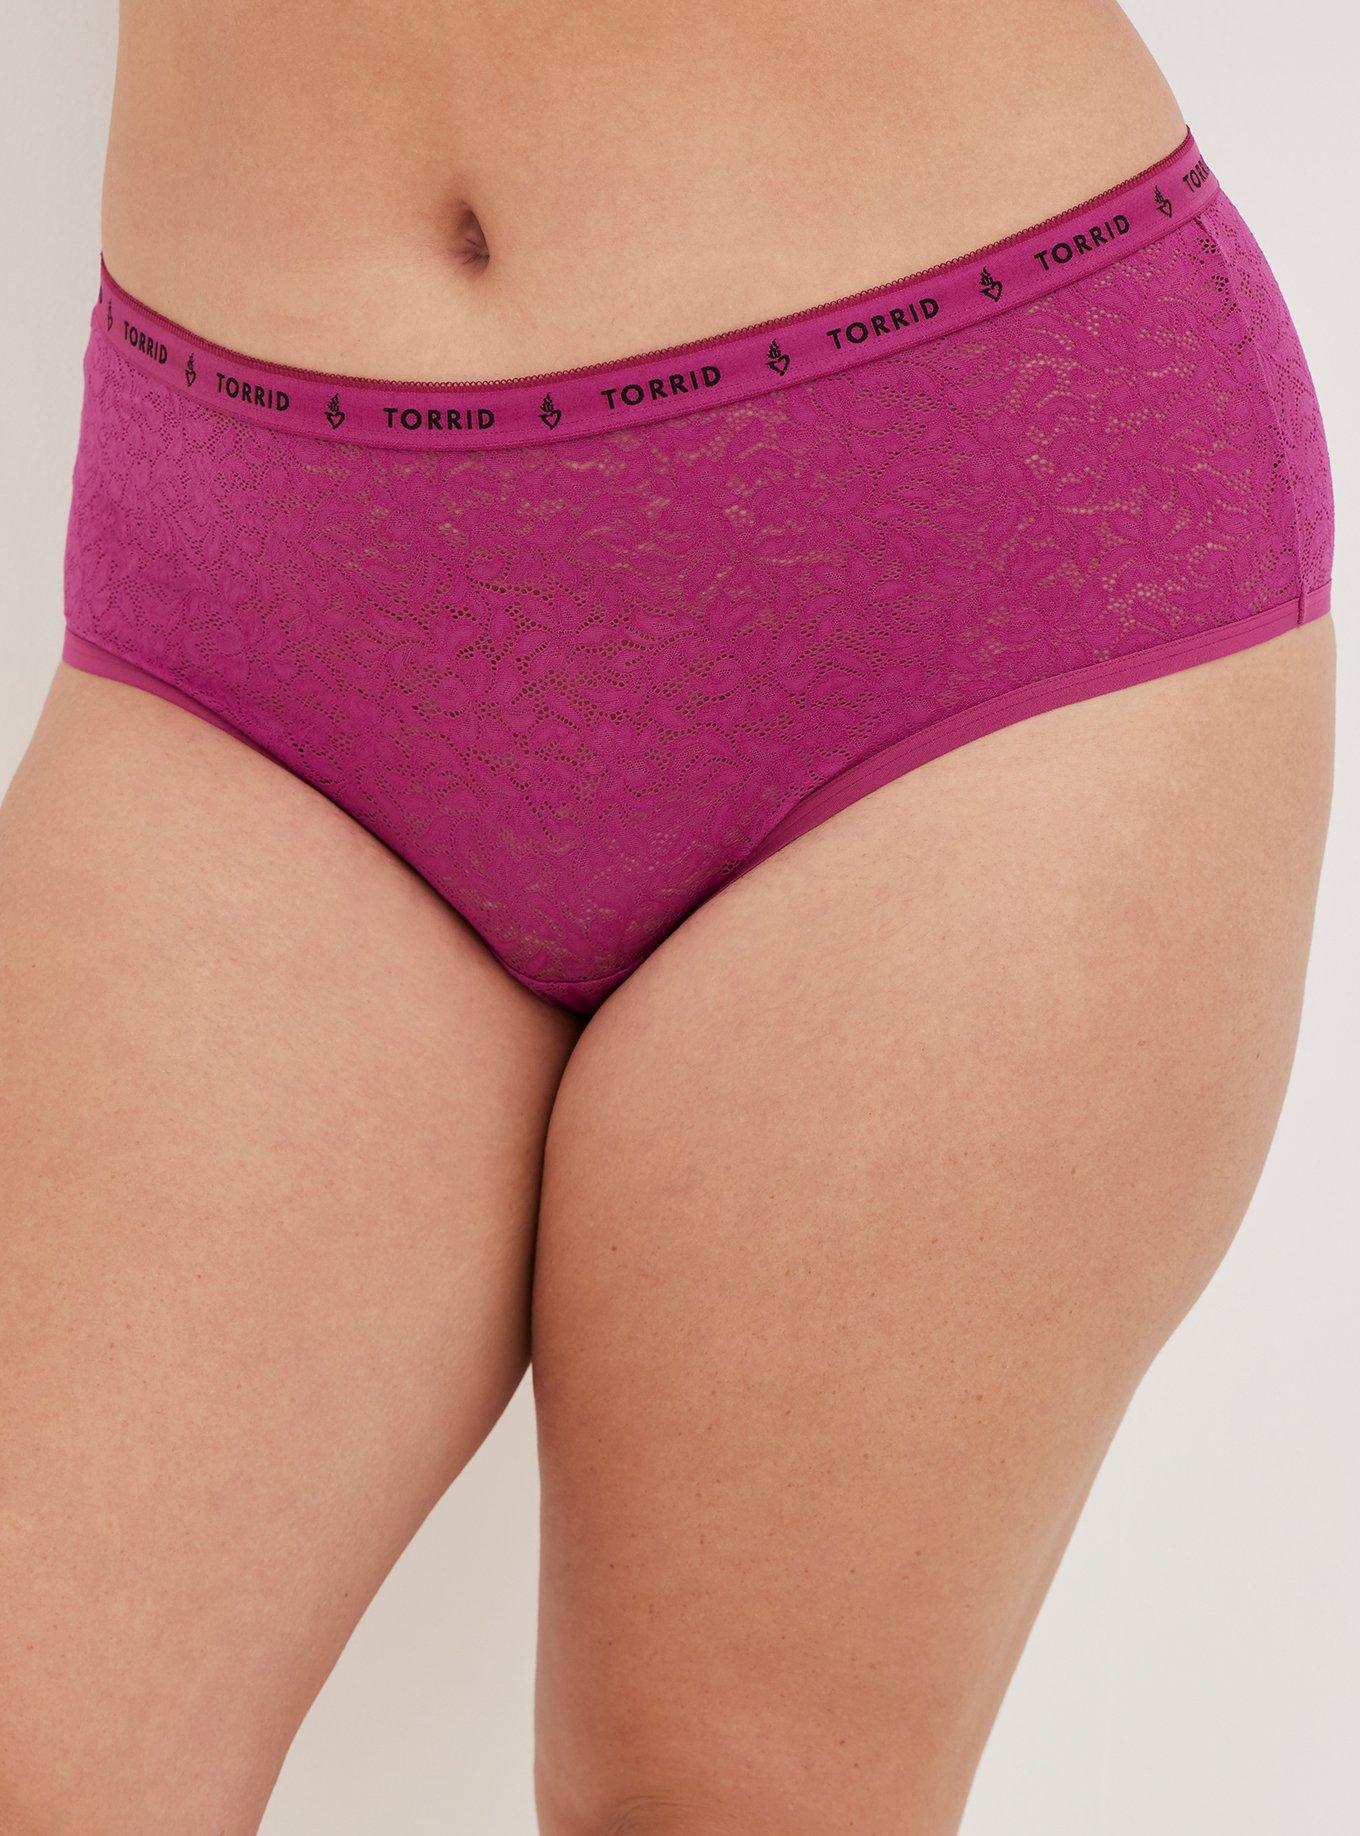 Women's Plus Size Stretch lace cheeky thong panty #8214/X/XX